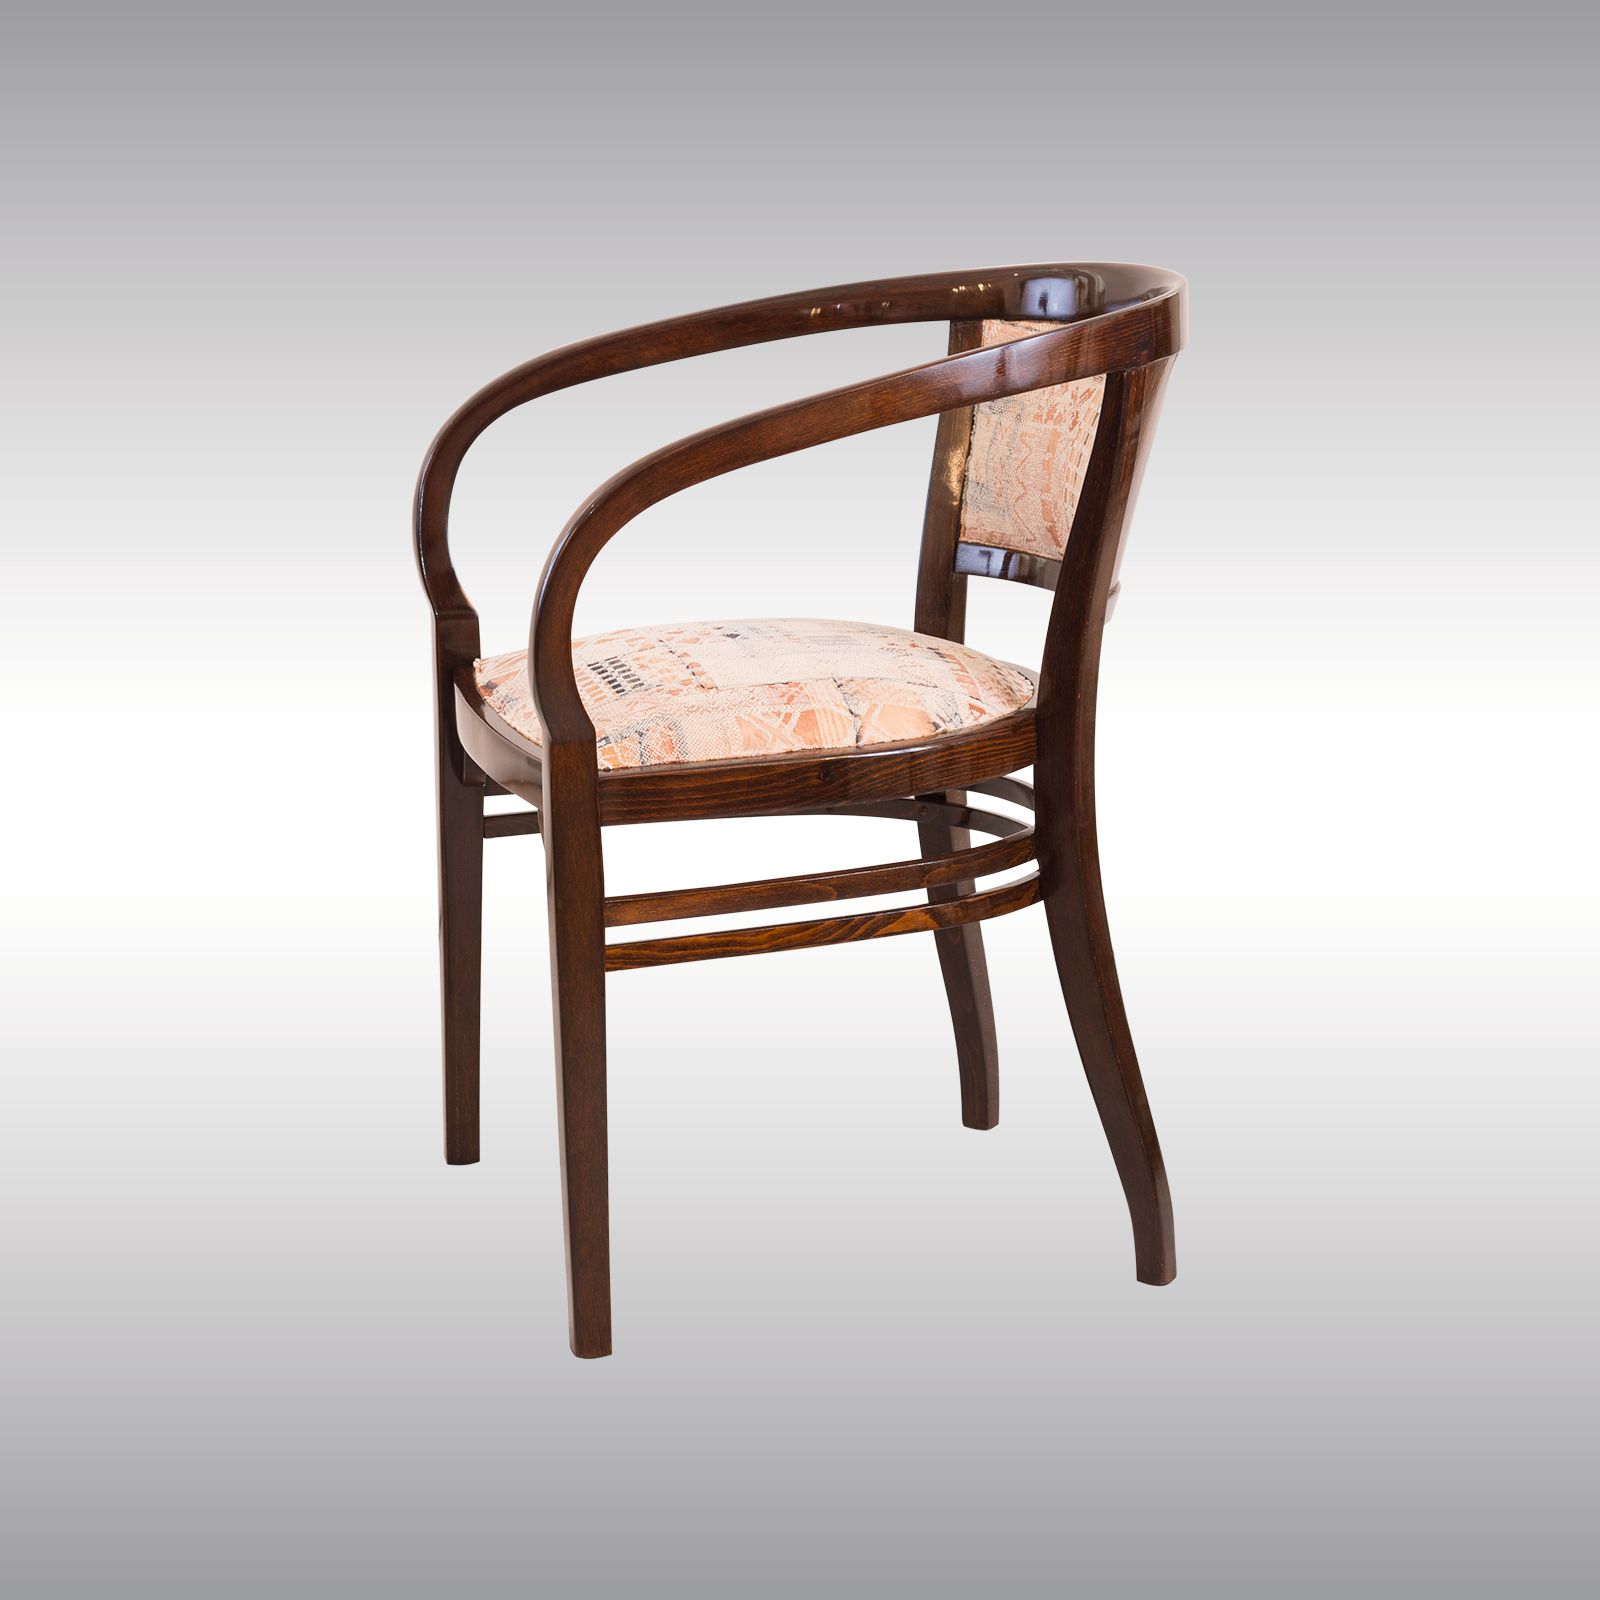 WOKA LAMPS VIENNA - OrderNr.: 80074|Besonders seltener und schöner Otto Wagner Sessel von Thonet 1901 - Design: Otto Wagner